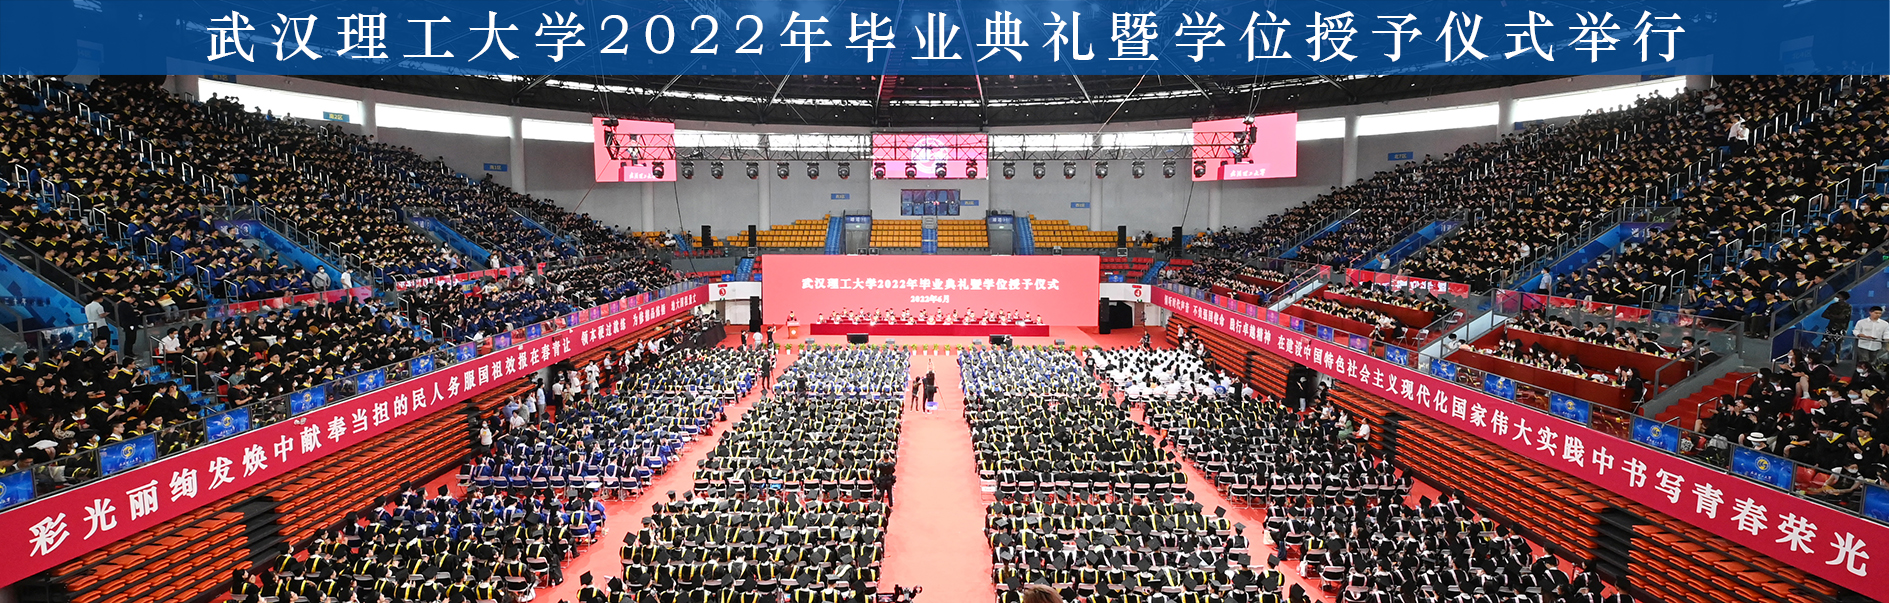 学校举行2022年毕业典礼暨学位授予仪式